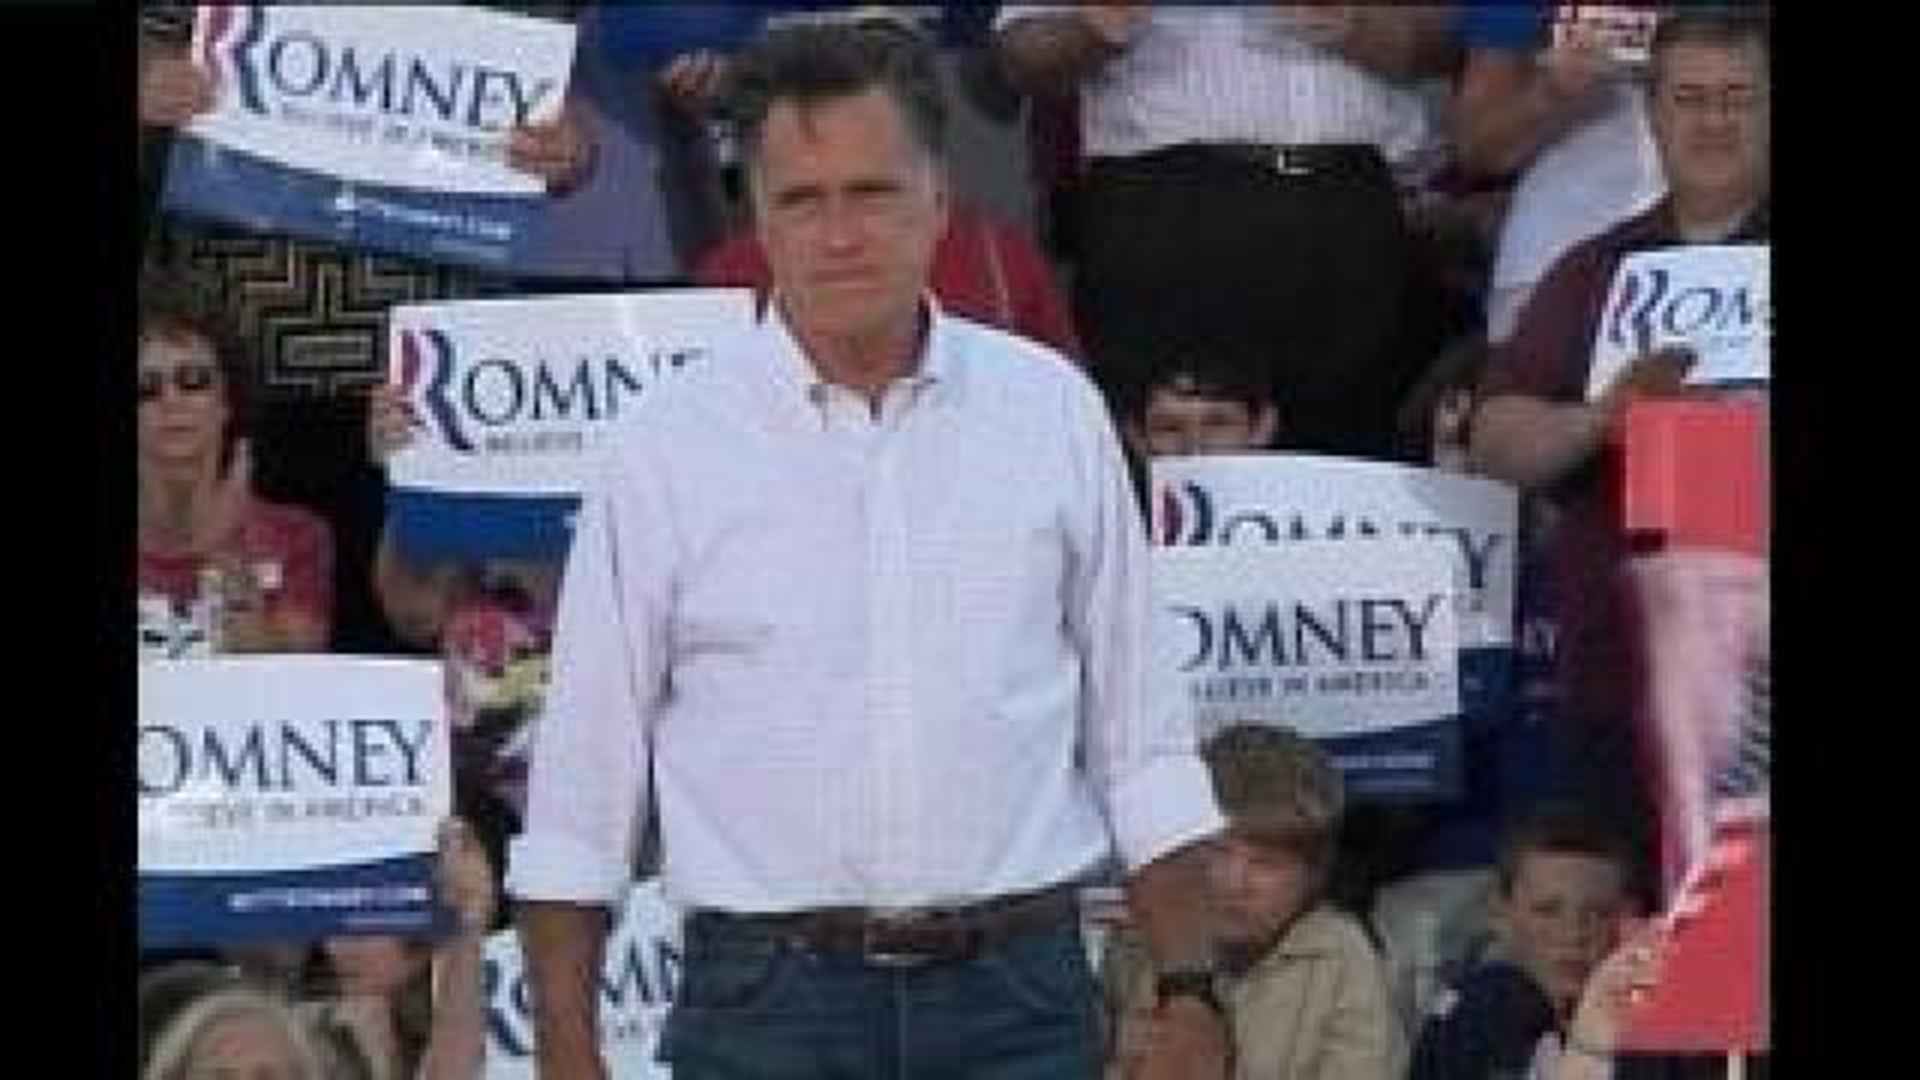 Romney in Davenport part 1 of 2